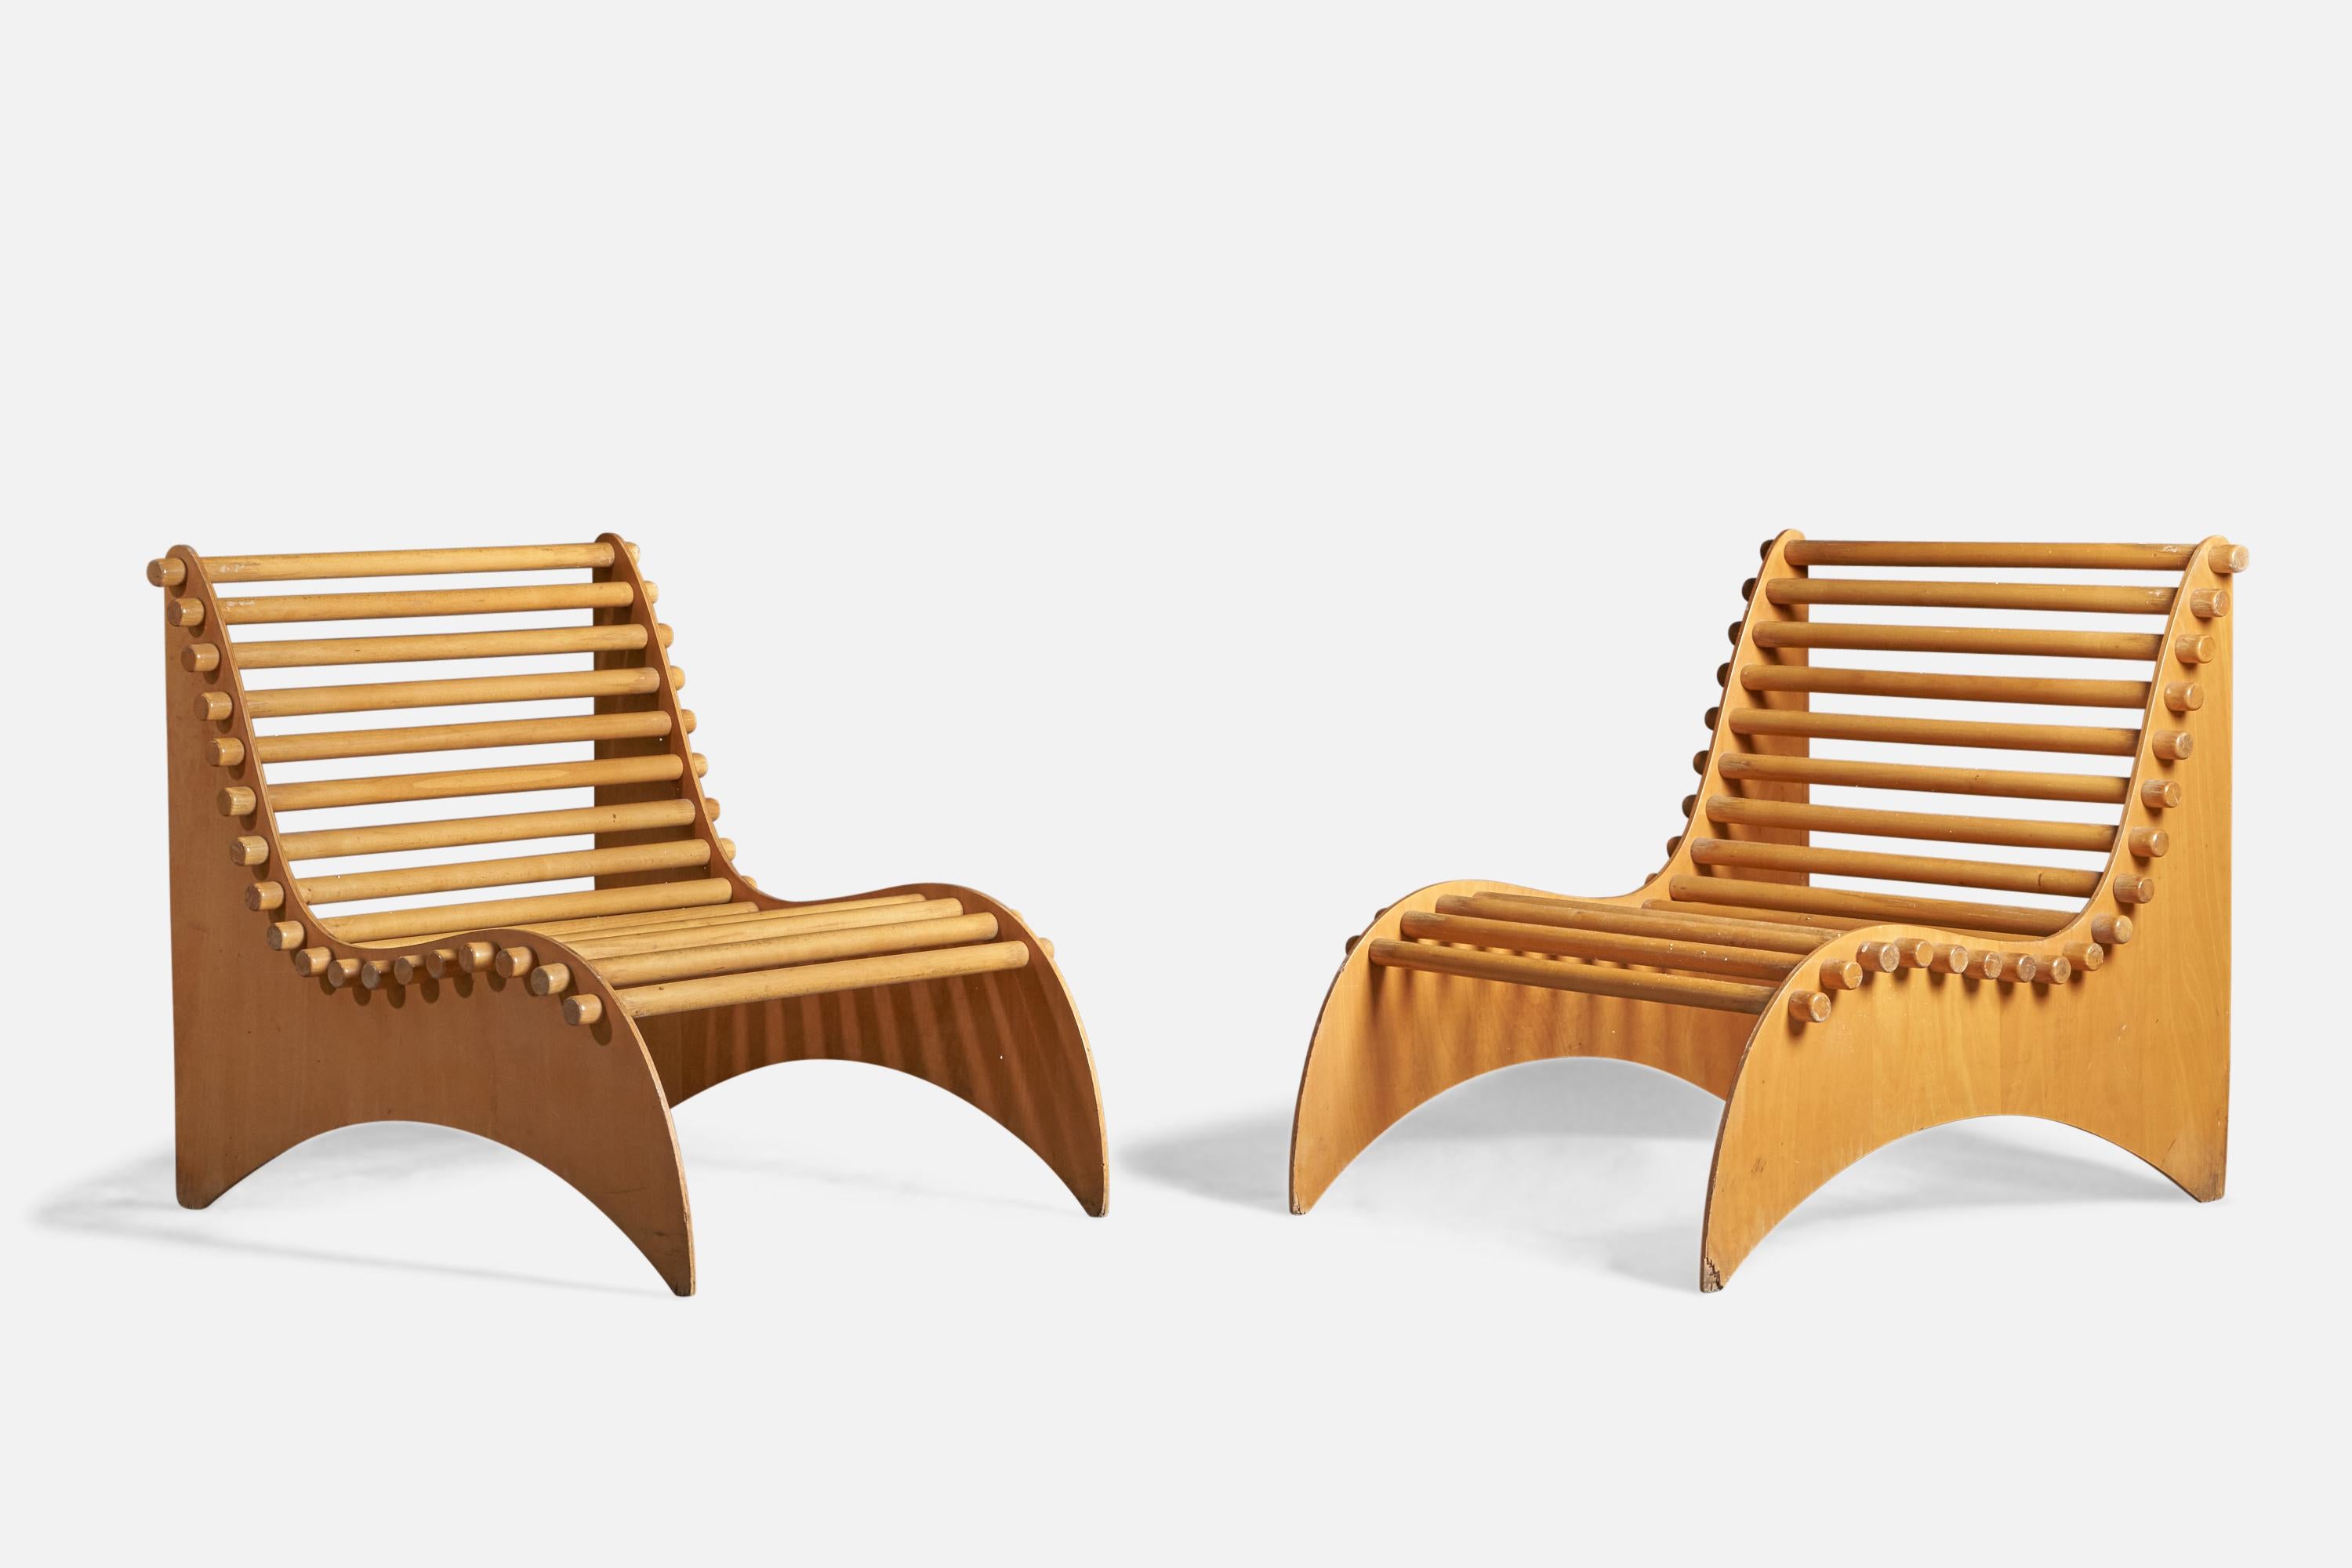 Ein Paar Loungesessel aus Sperrholz und Massivholz oder Pantoffelstühle, entworfen und hergestellt in Italien, ca. 1960er Jahre

14,75